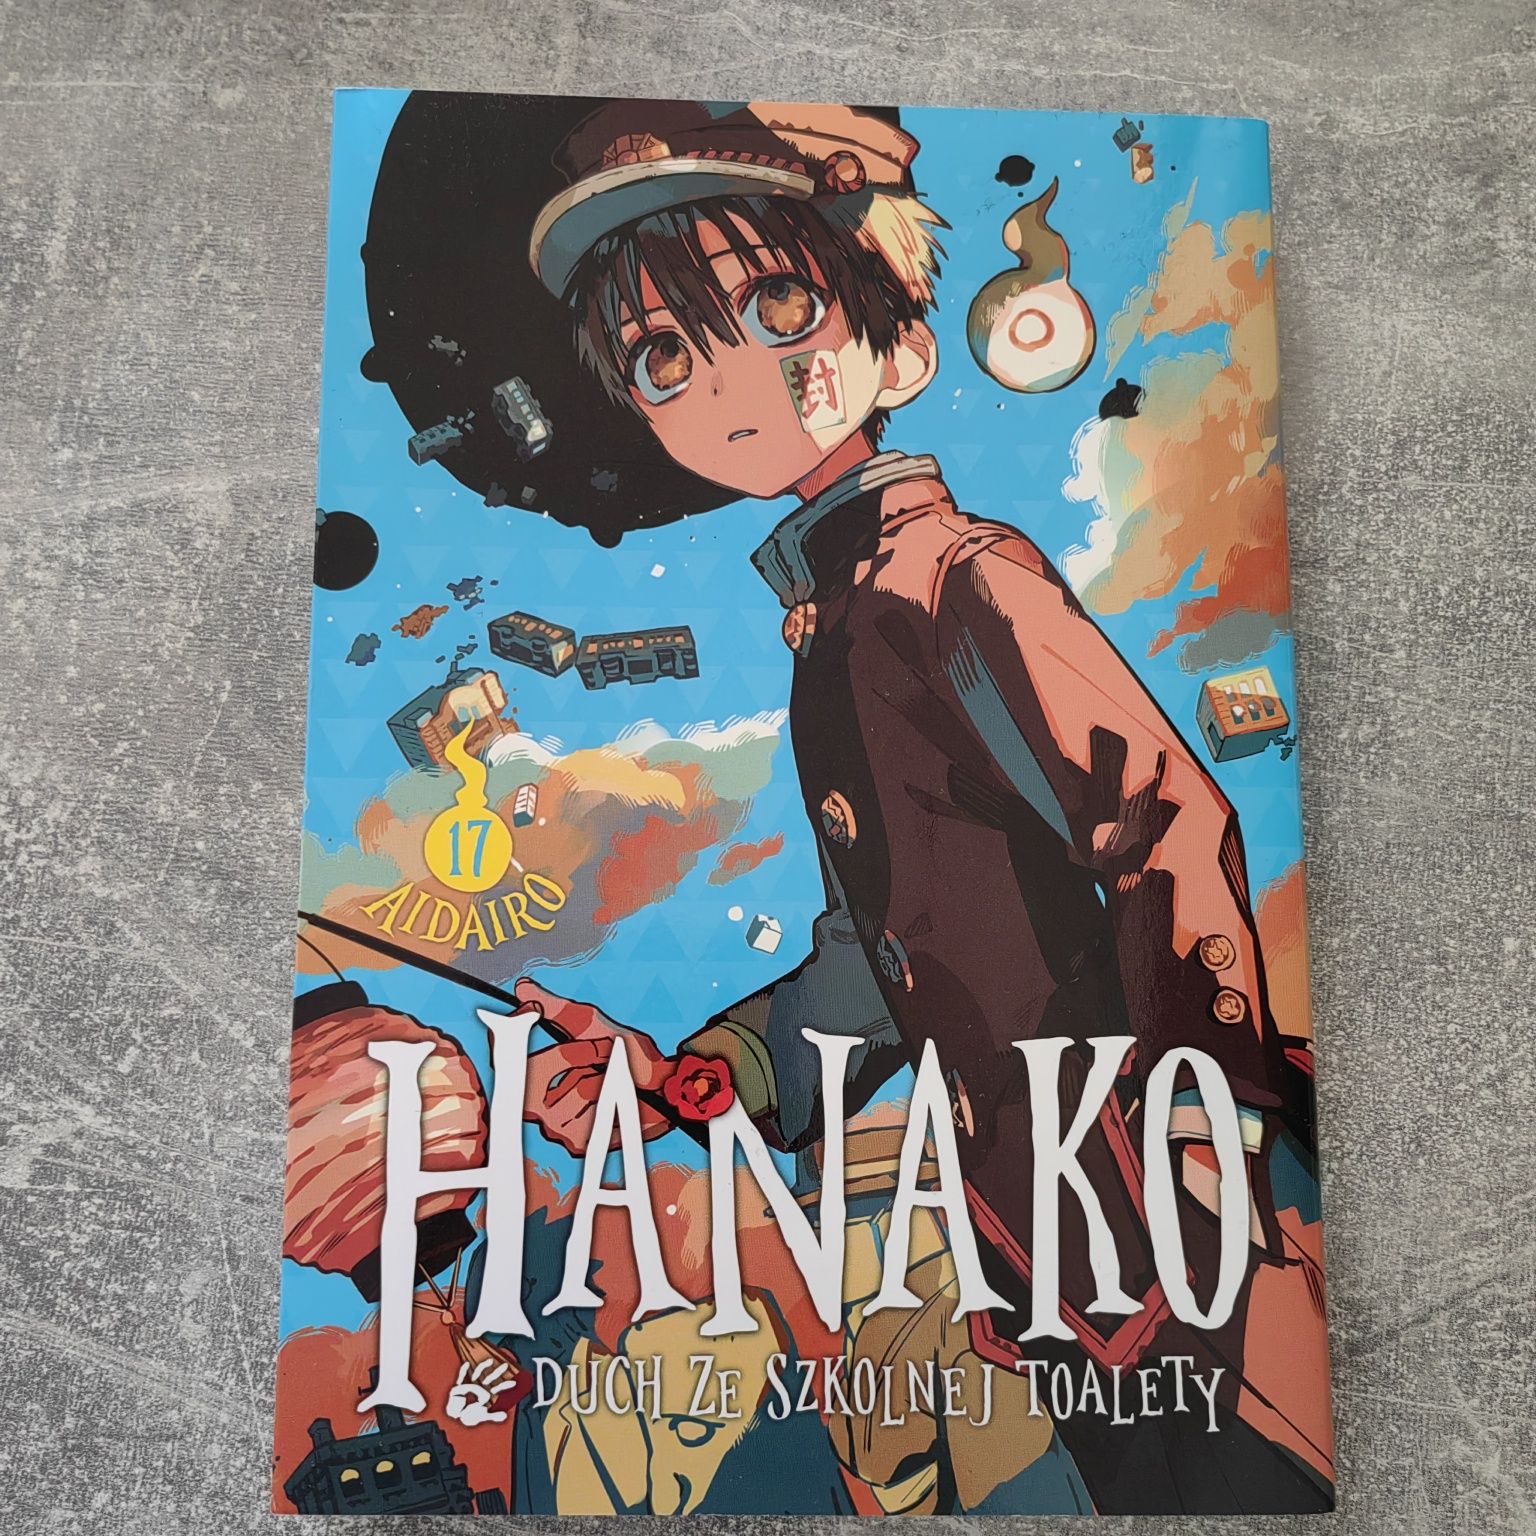 Hanako Duch ze szkolnej toalety Nowa Książka komiks